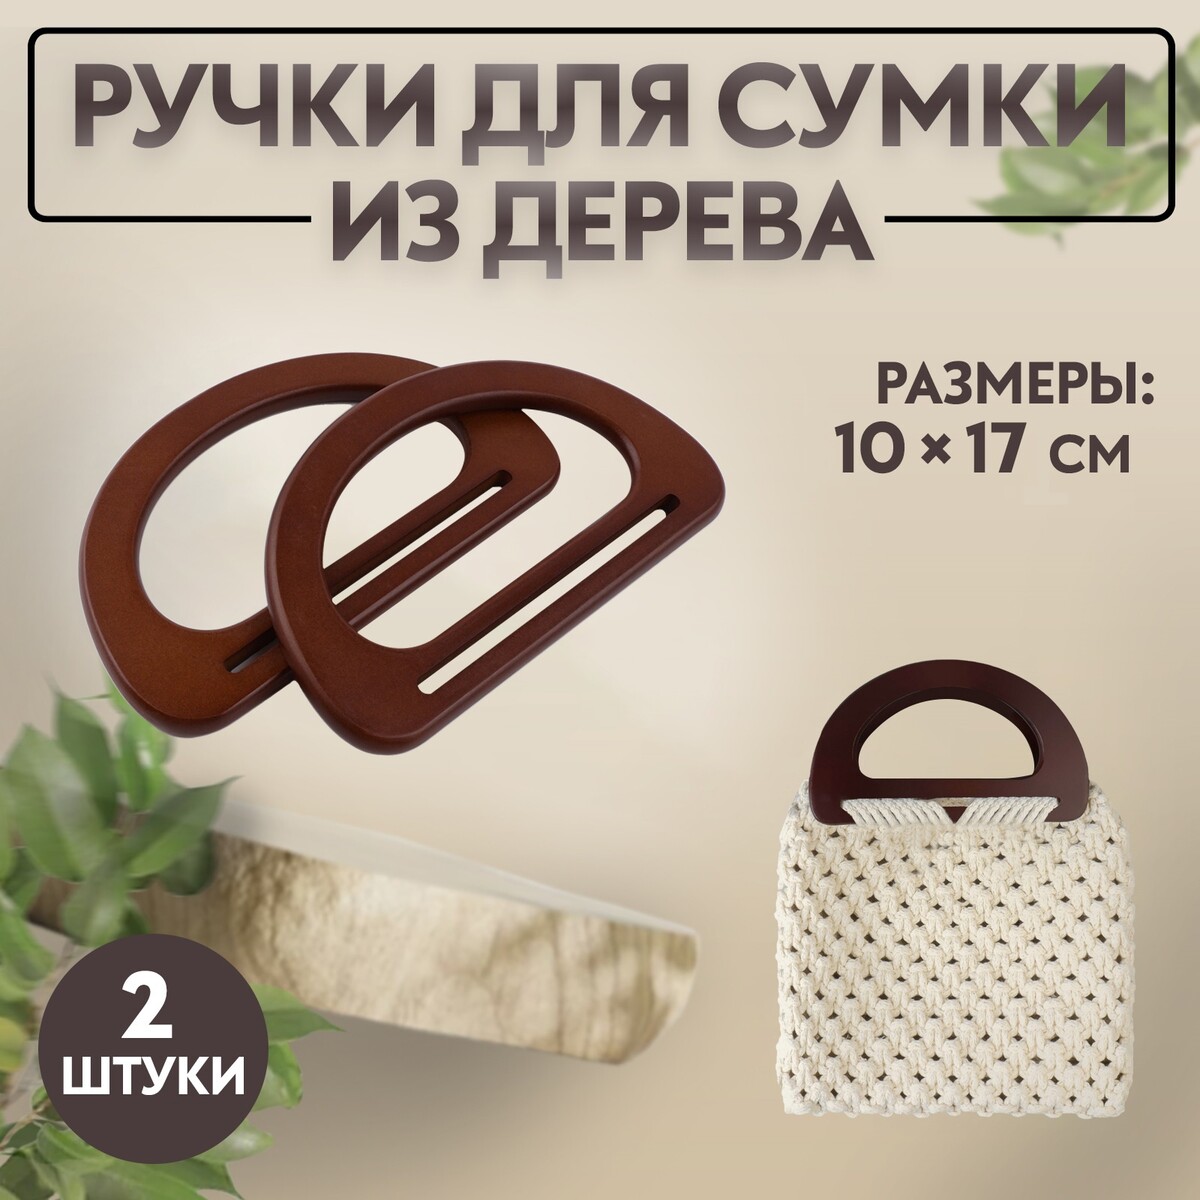 Ручки для сумки деревянные, 10 × 17 см, 2 шт, цвет темно-коричневый ручки для сумки деревянные d 18 × 14 5 9 × 10 5 см 2 шт коричневый